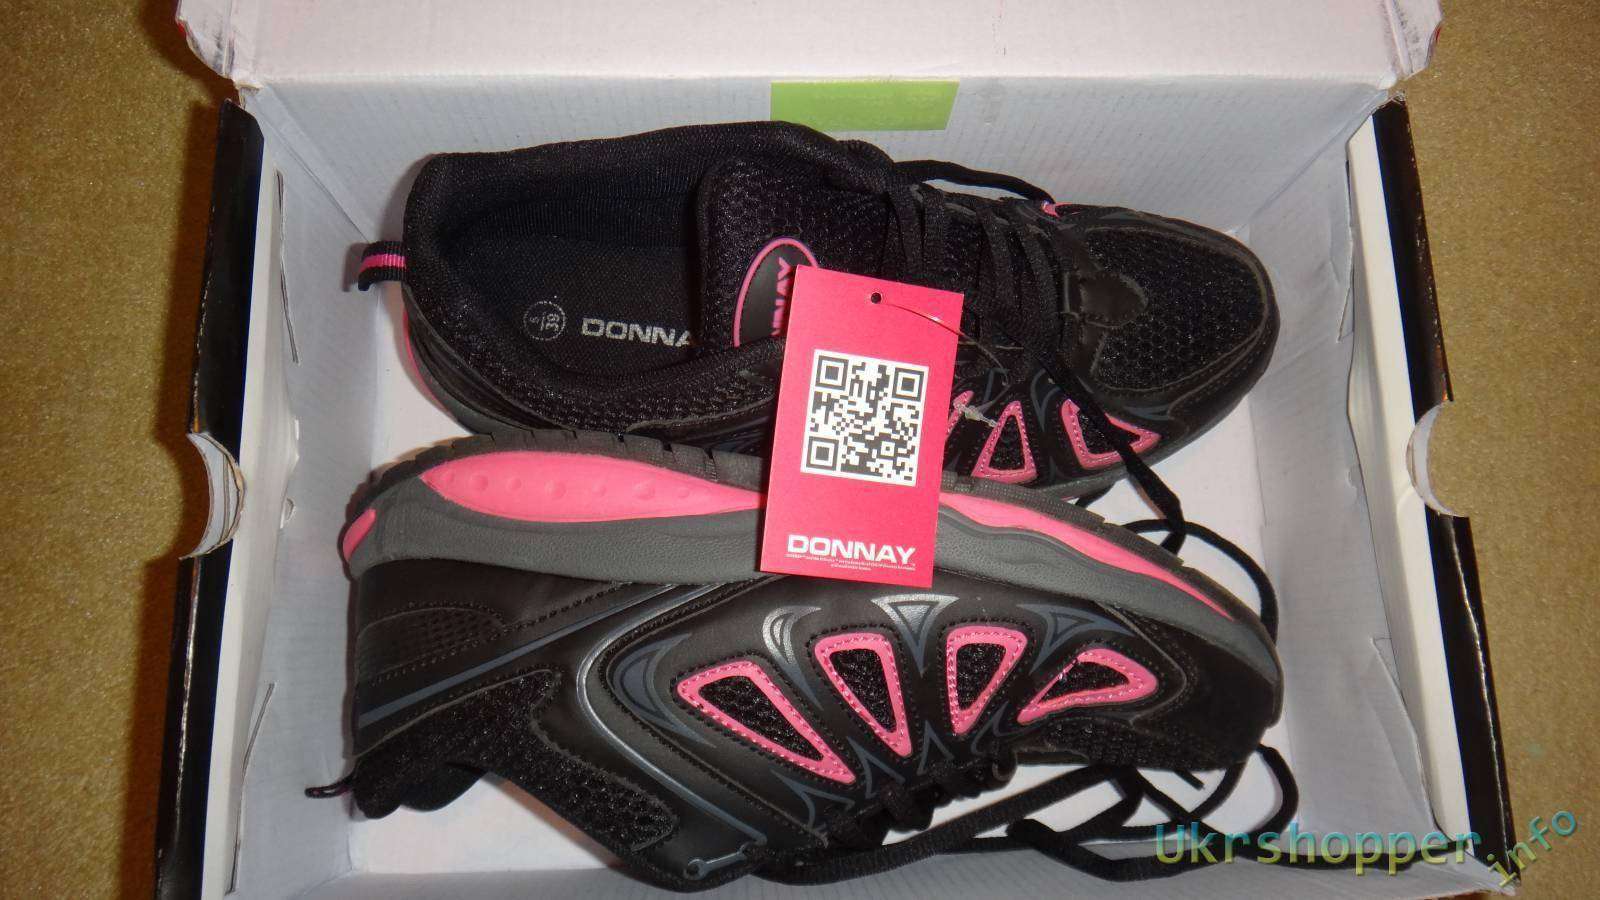 Sportsdirect: Обзор женских кроссовок фирмы Donnay